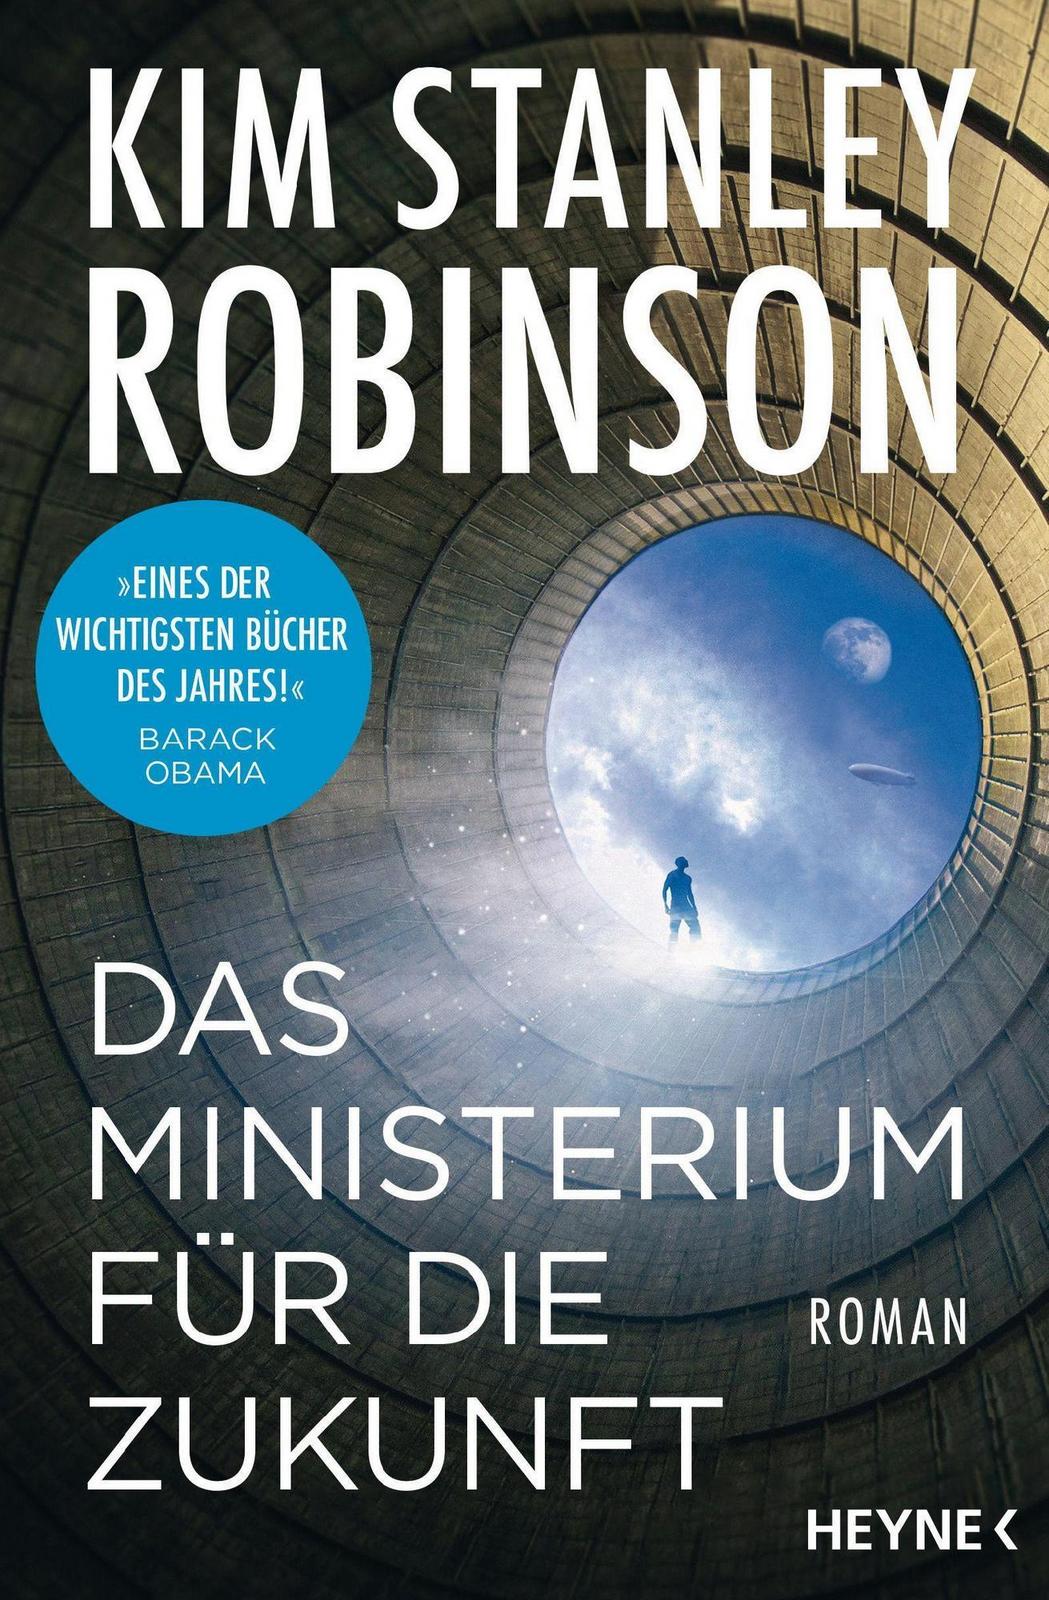 Kim Stanley Robinson: Das Ministerium für die Zukunft (German language, Heyne Verlag)